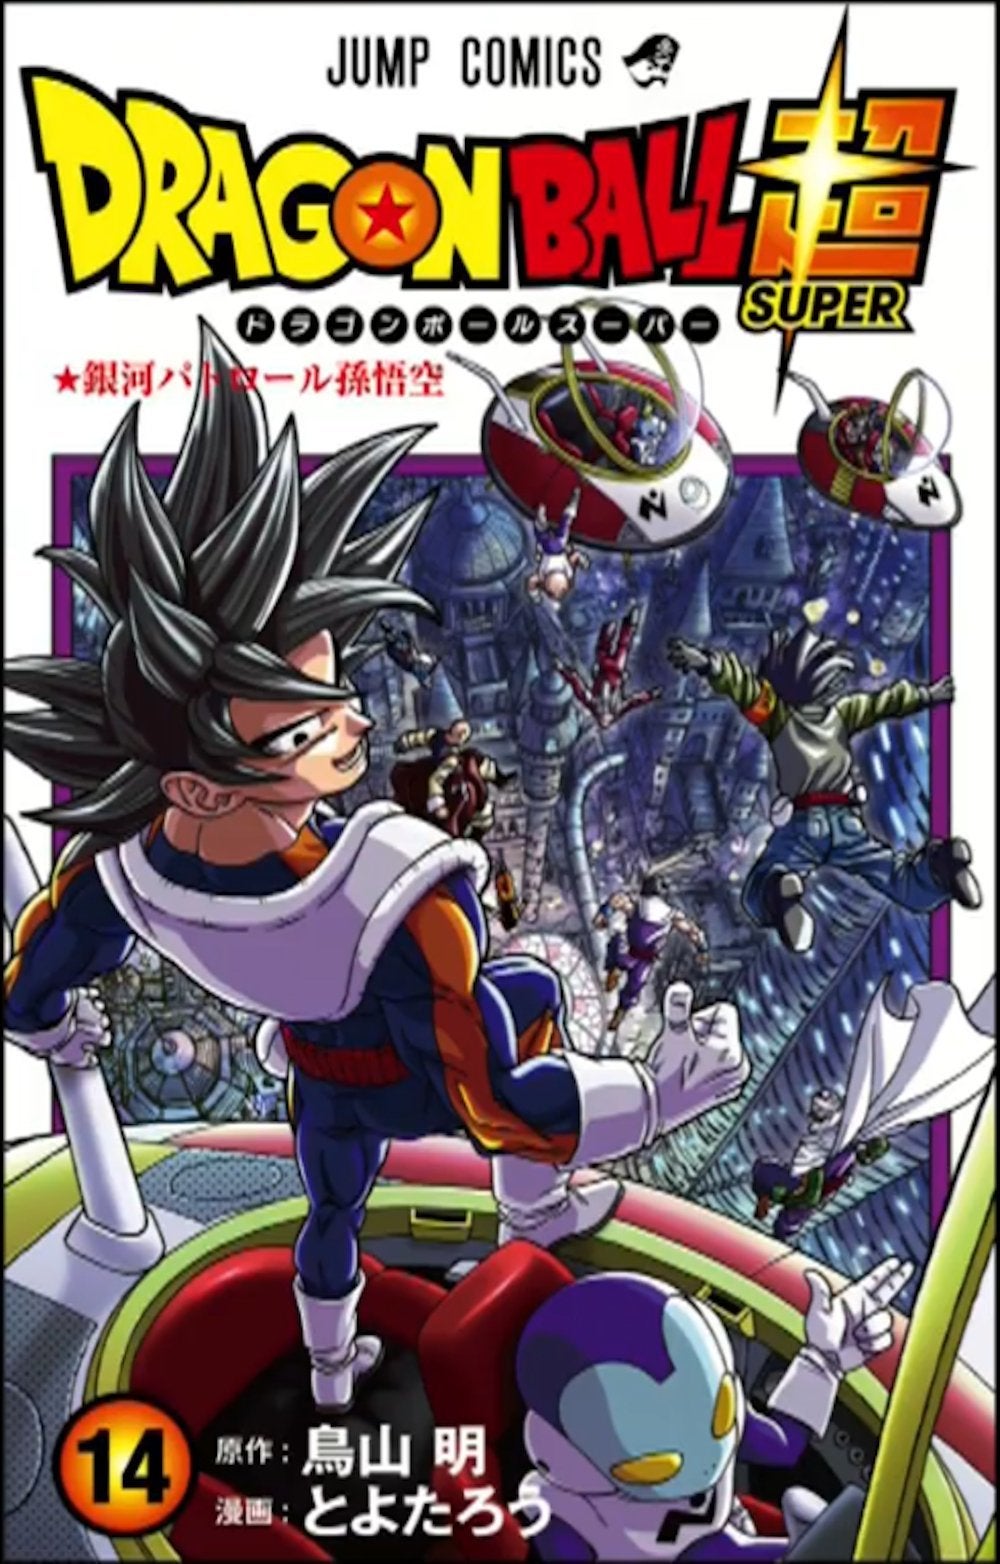 Portada del Volumen 14 de Dragon Ball Super Manga